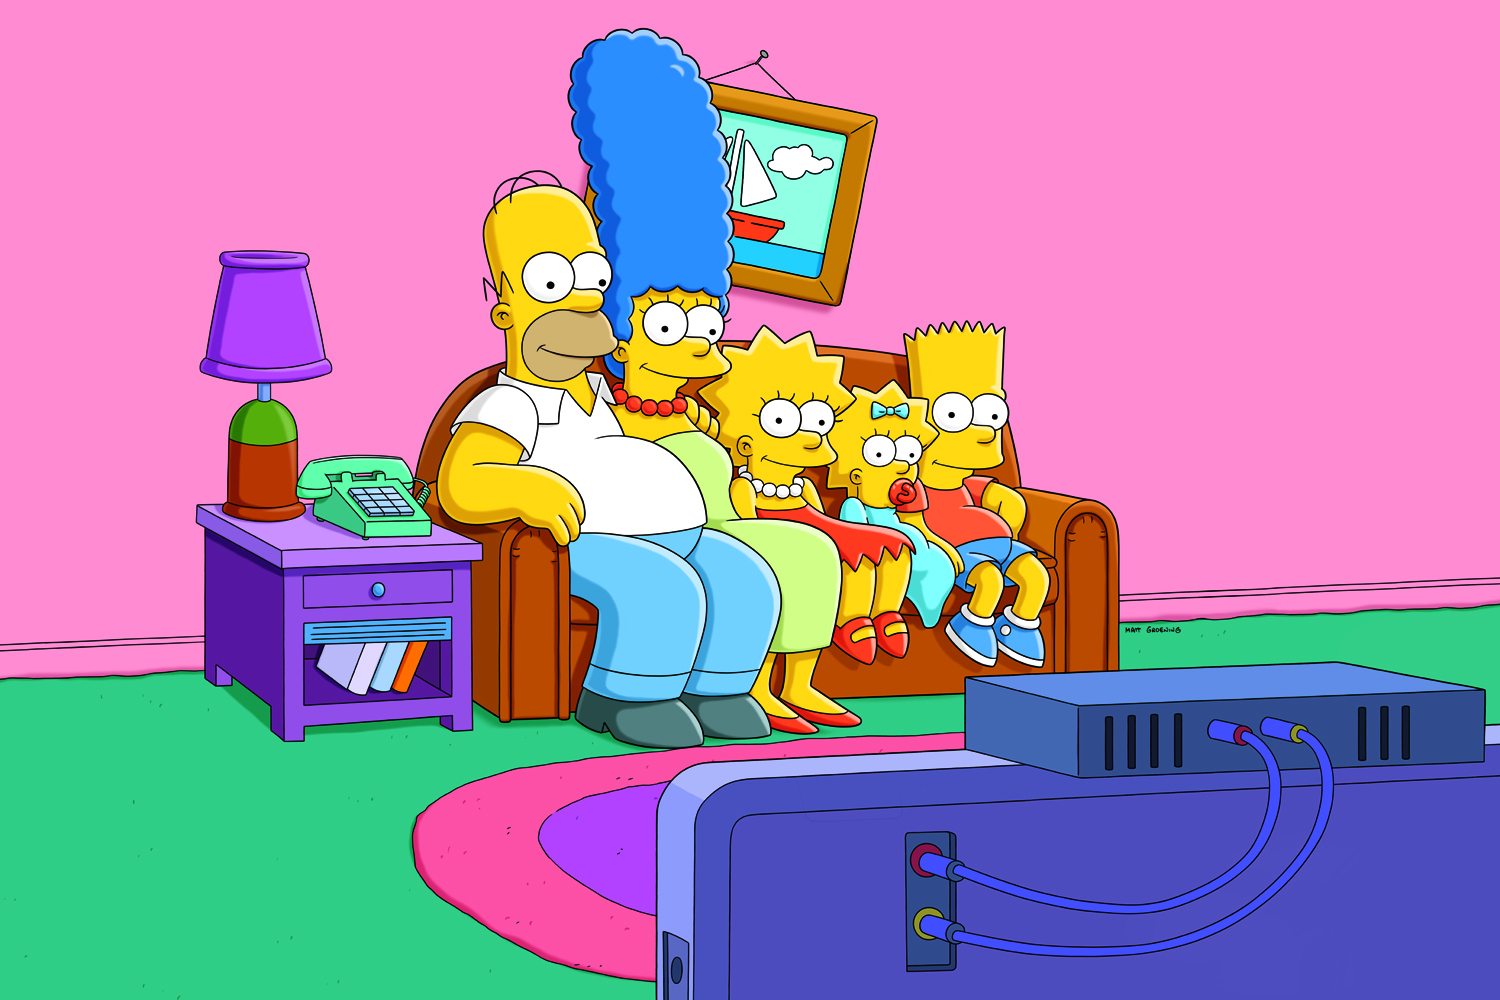 SimpsonsBG_2013_R1_Sofa